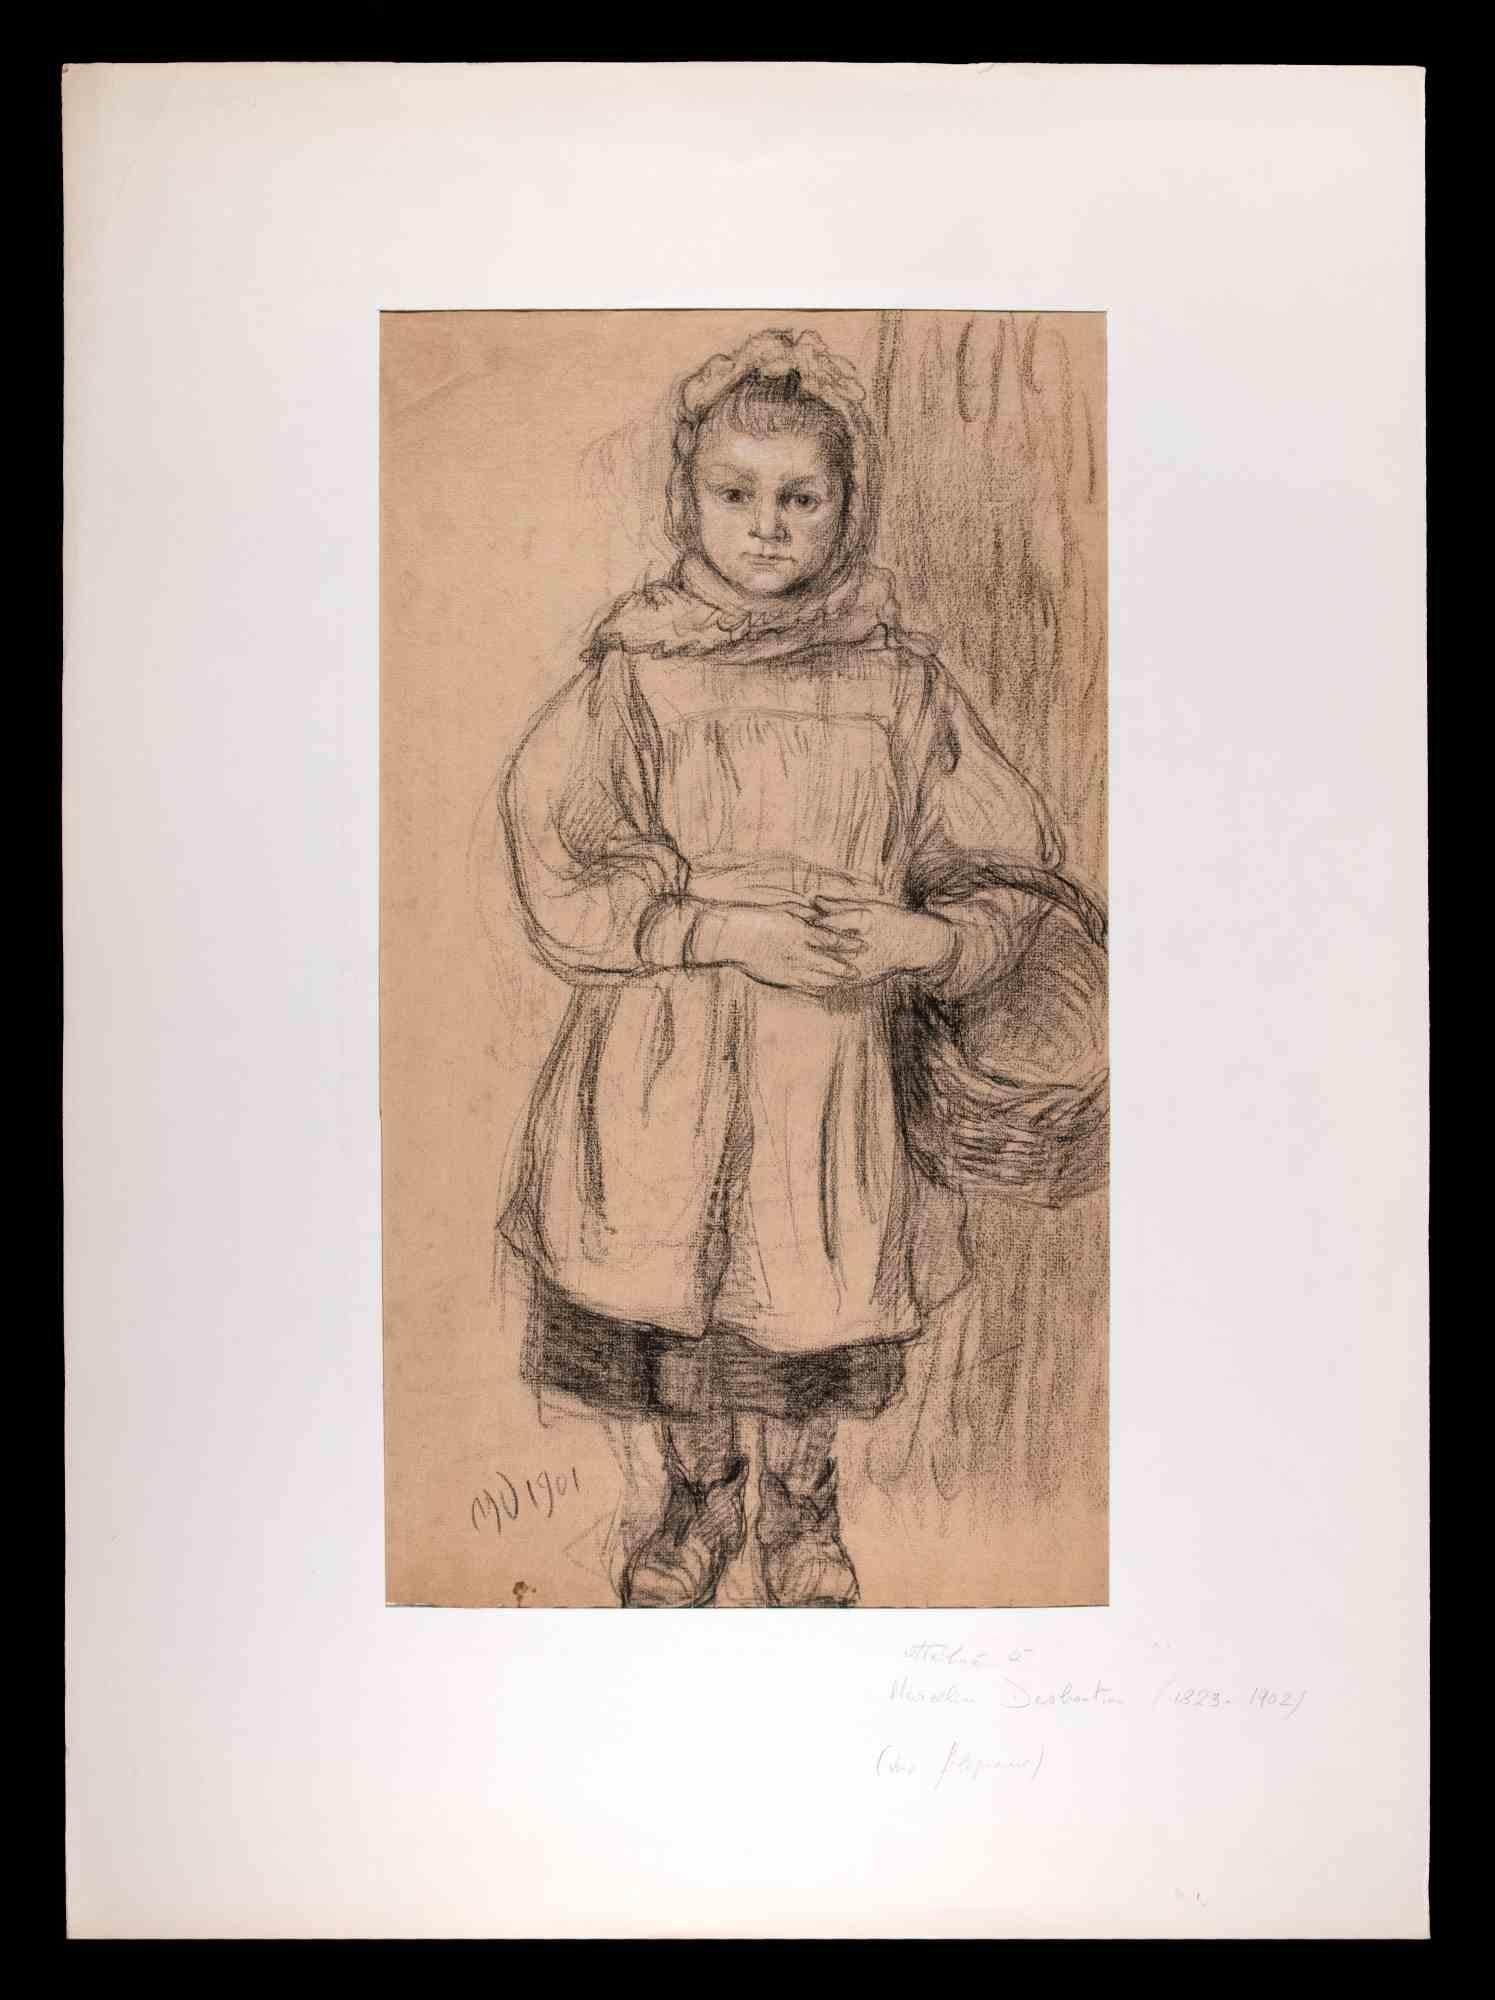 Portrait d'enfant est une oeuvre d'art originale attribuée à Marcellin Desboutin. Dessin original, monogrammé au crayon dans la marge inférieure gauche et daté de 1901.

Passpartout inclus cm 70x52.

Bonnes conditions. 

Marcellin Desboutin